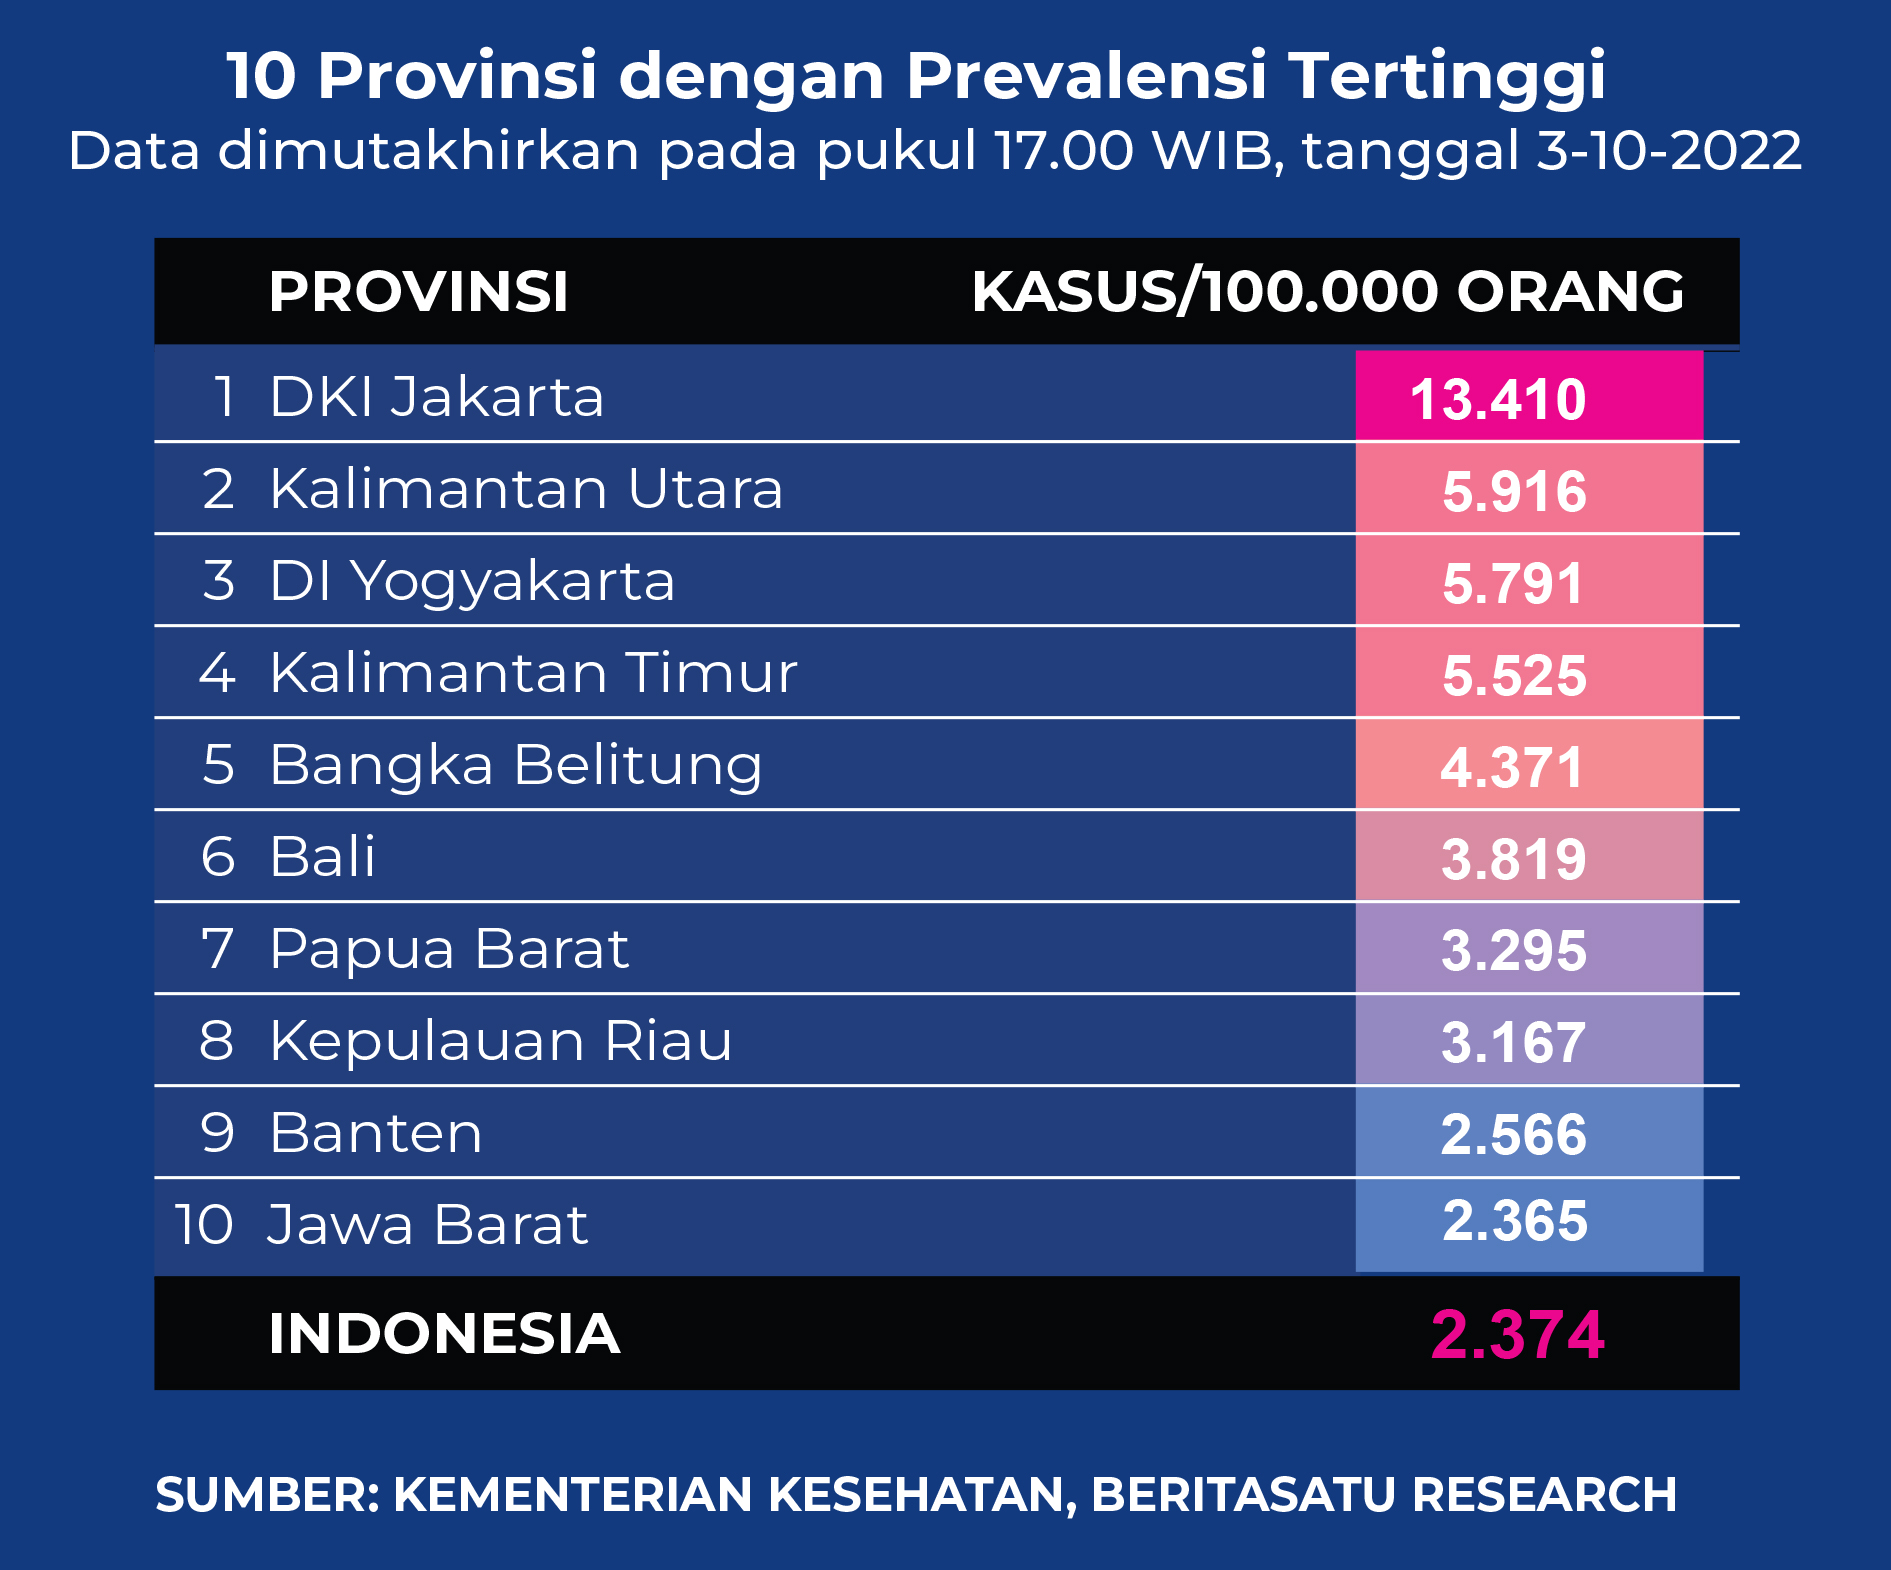 Data 10 provinsi dengan prevalensi tertinggi Covid-19 pada 3 Oktober 2022.